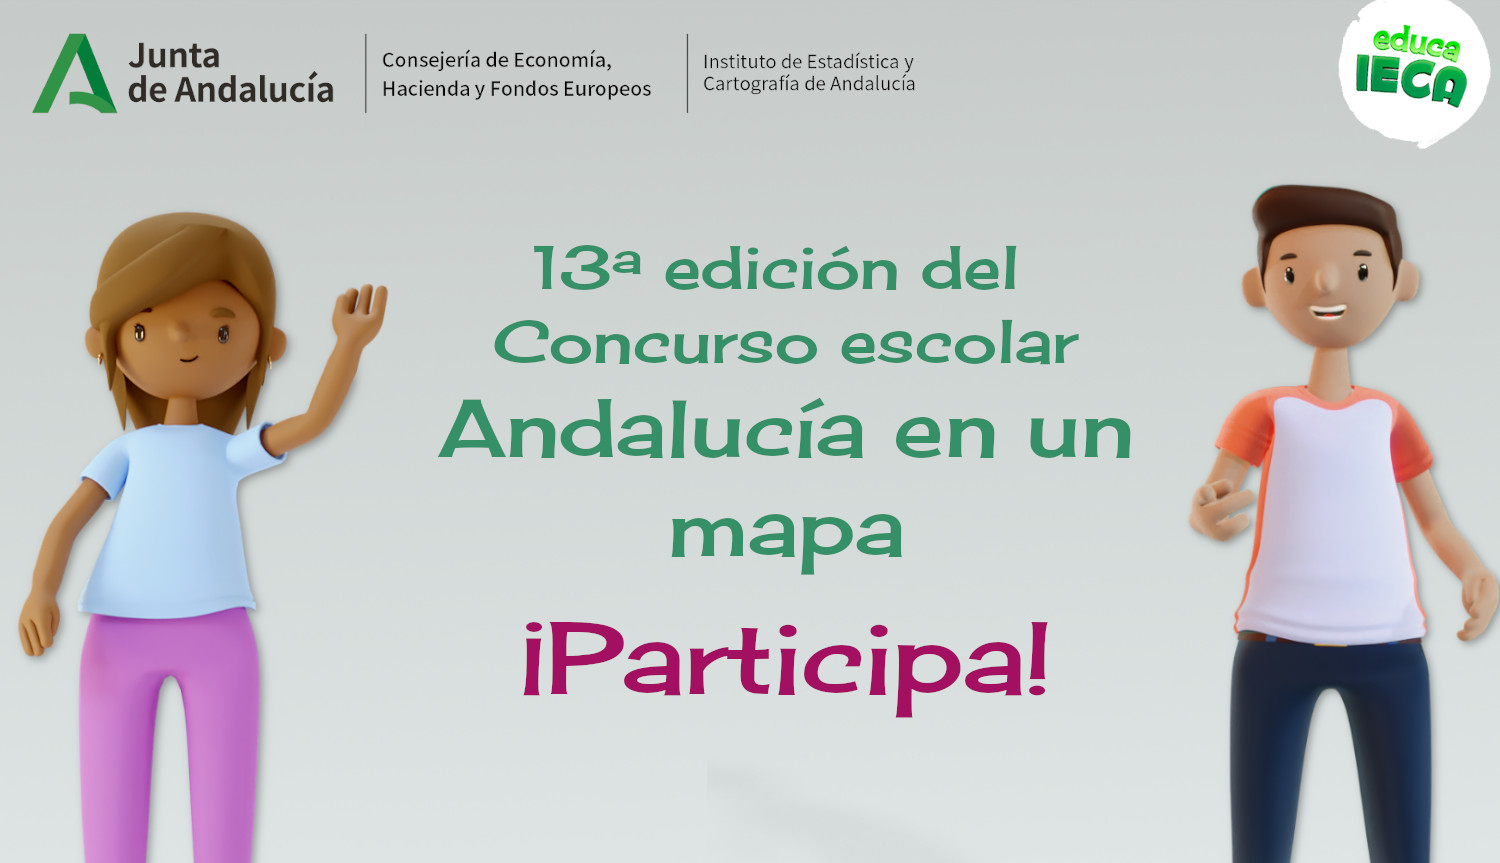 Concurso escolar Andalucía en un mapa